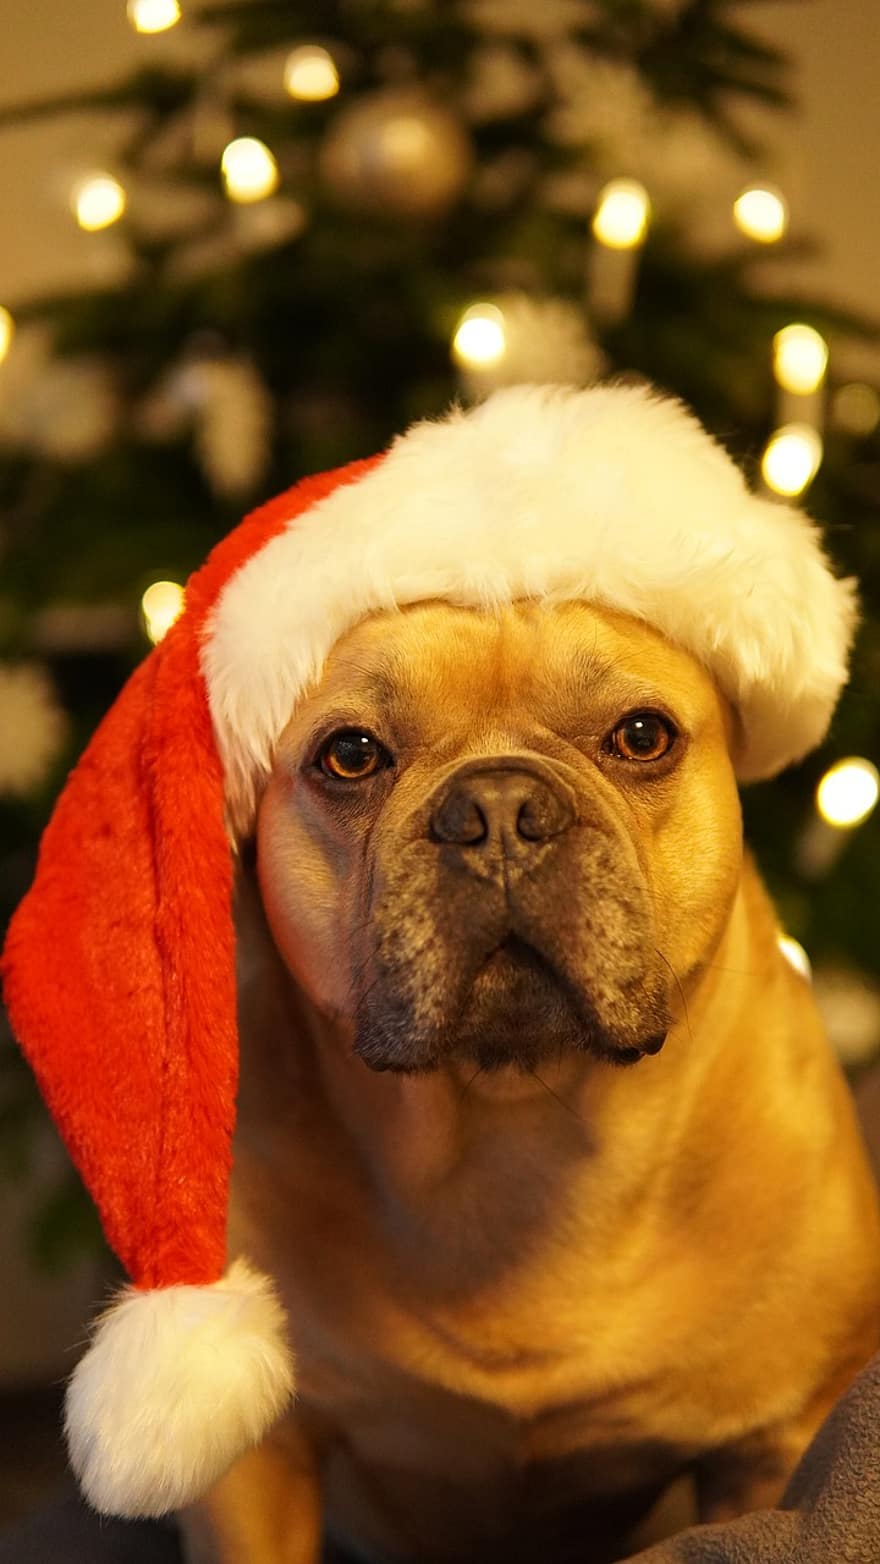 suns, Ziemassvētki, priecīgas brīvdienas, Ziemassvētku kartīte, Ziemassvētku ballīte, franču buldogs, gudrs, santa cepure, egle